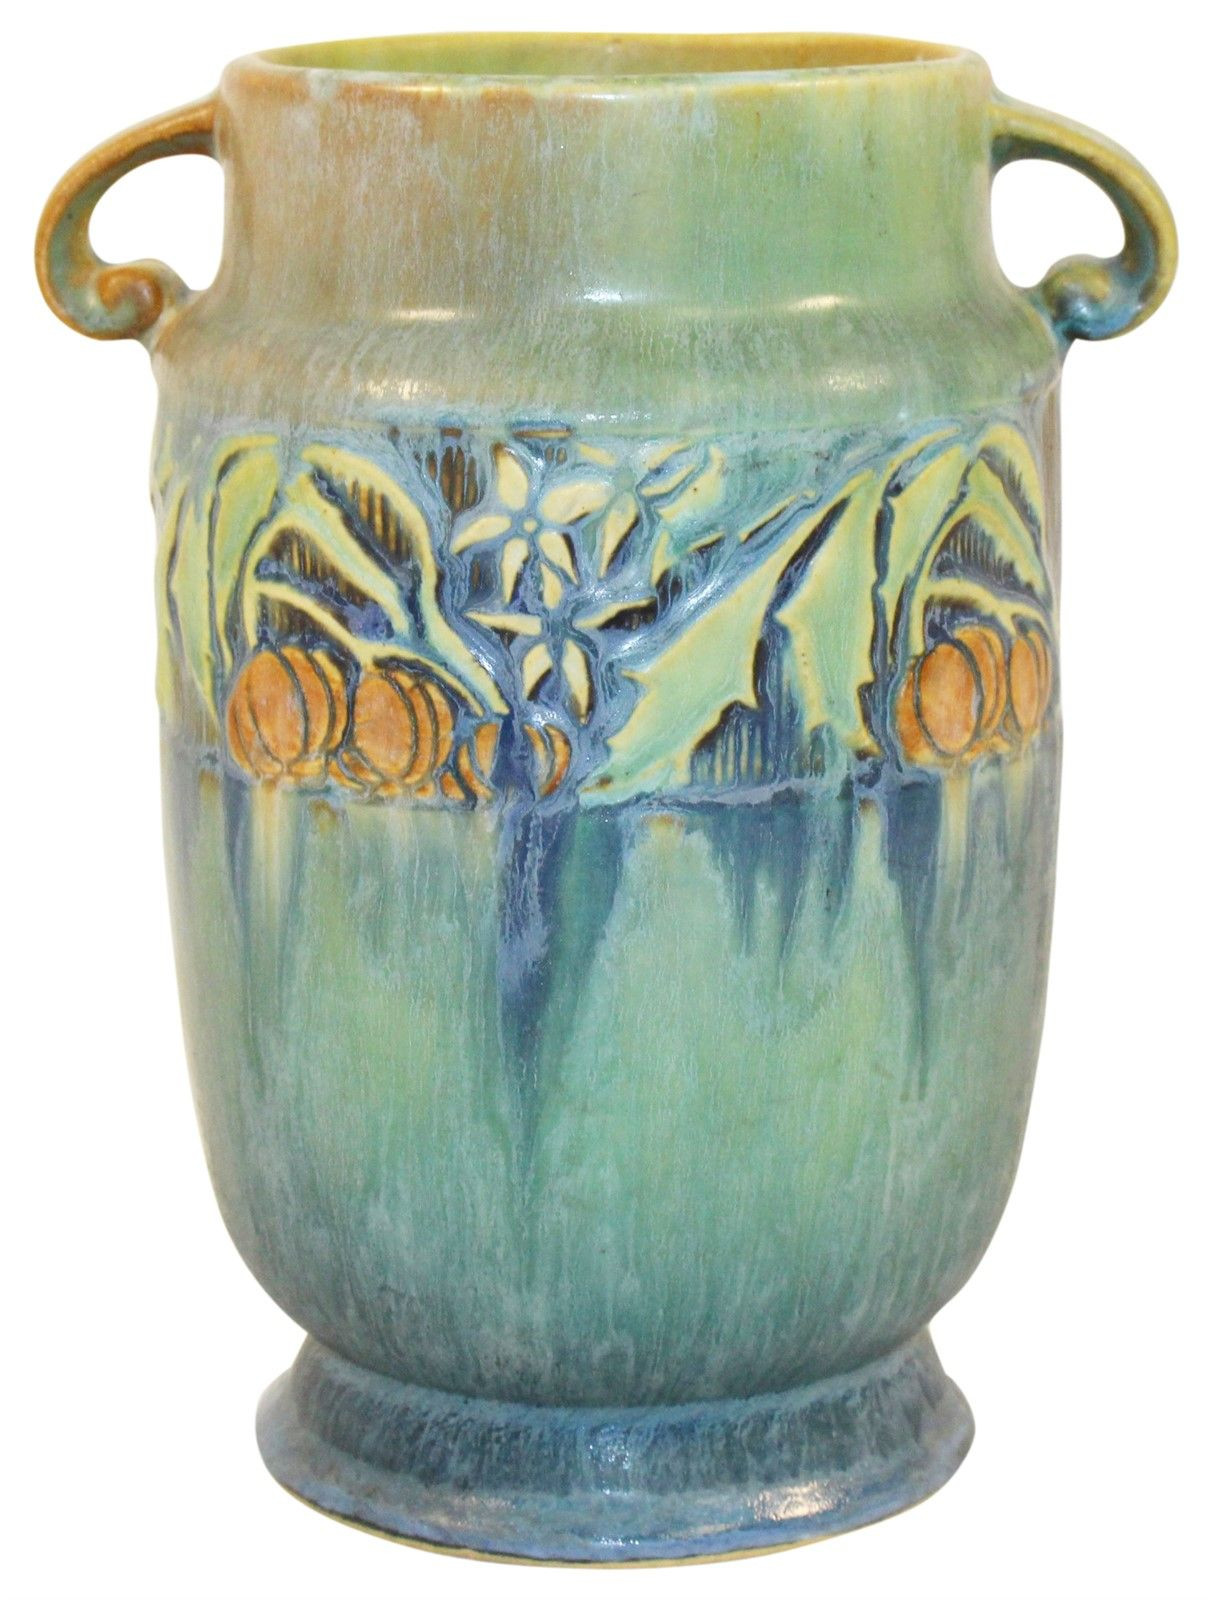 roseville pottery green vase of roseville pottery baneda green vase 592 7 art pottery within roseville pottery baneda green vase 592 7